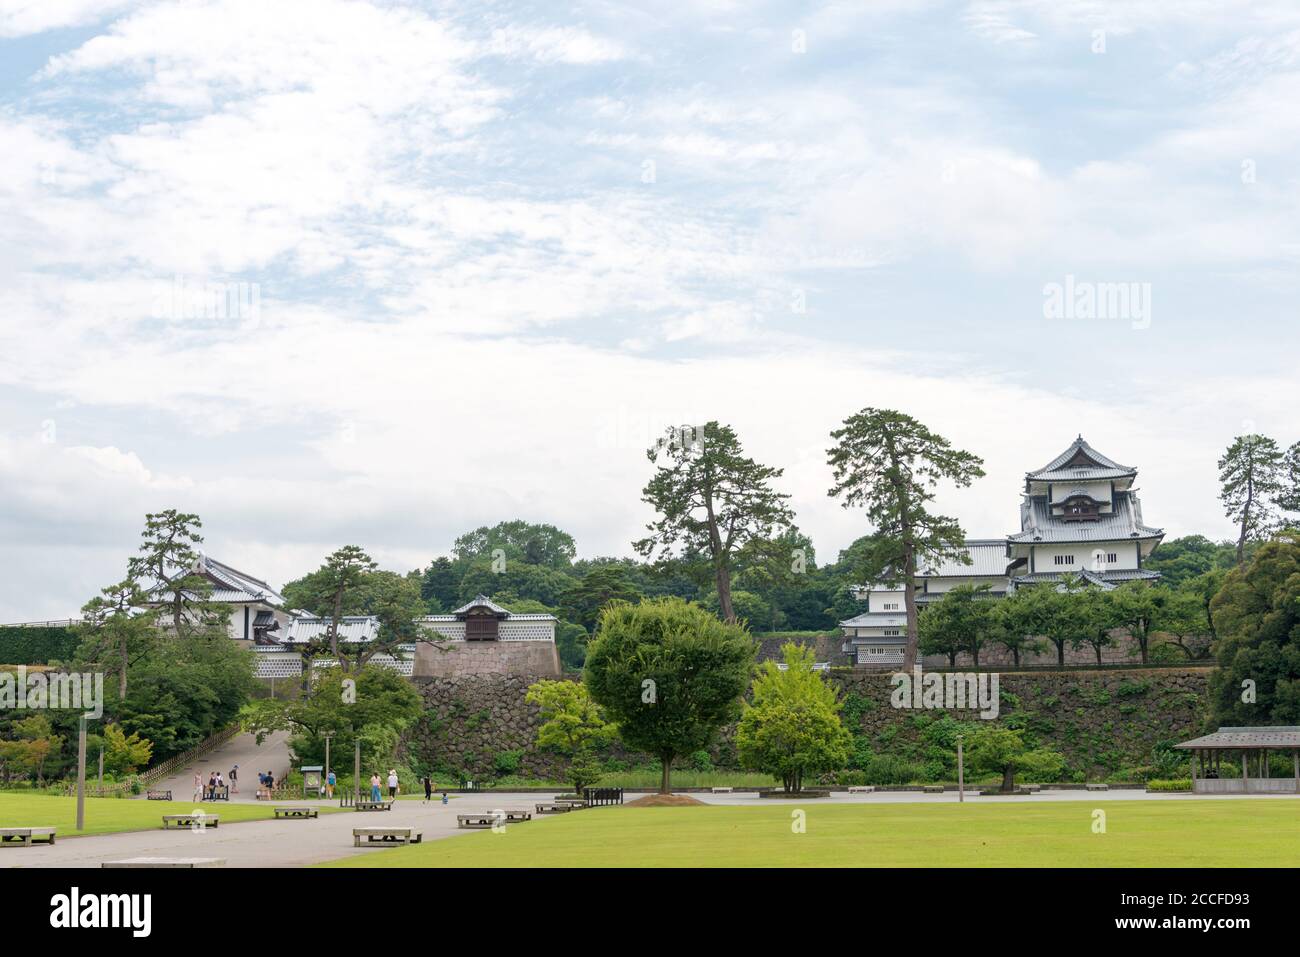 Kanazawa, Japan - Kanazawa Castle Park in Kanazawa, Ishikawa, Japan. a famous historic site. Stock Photo